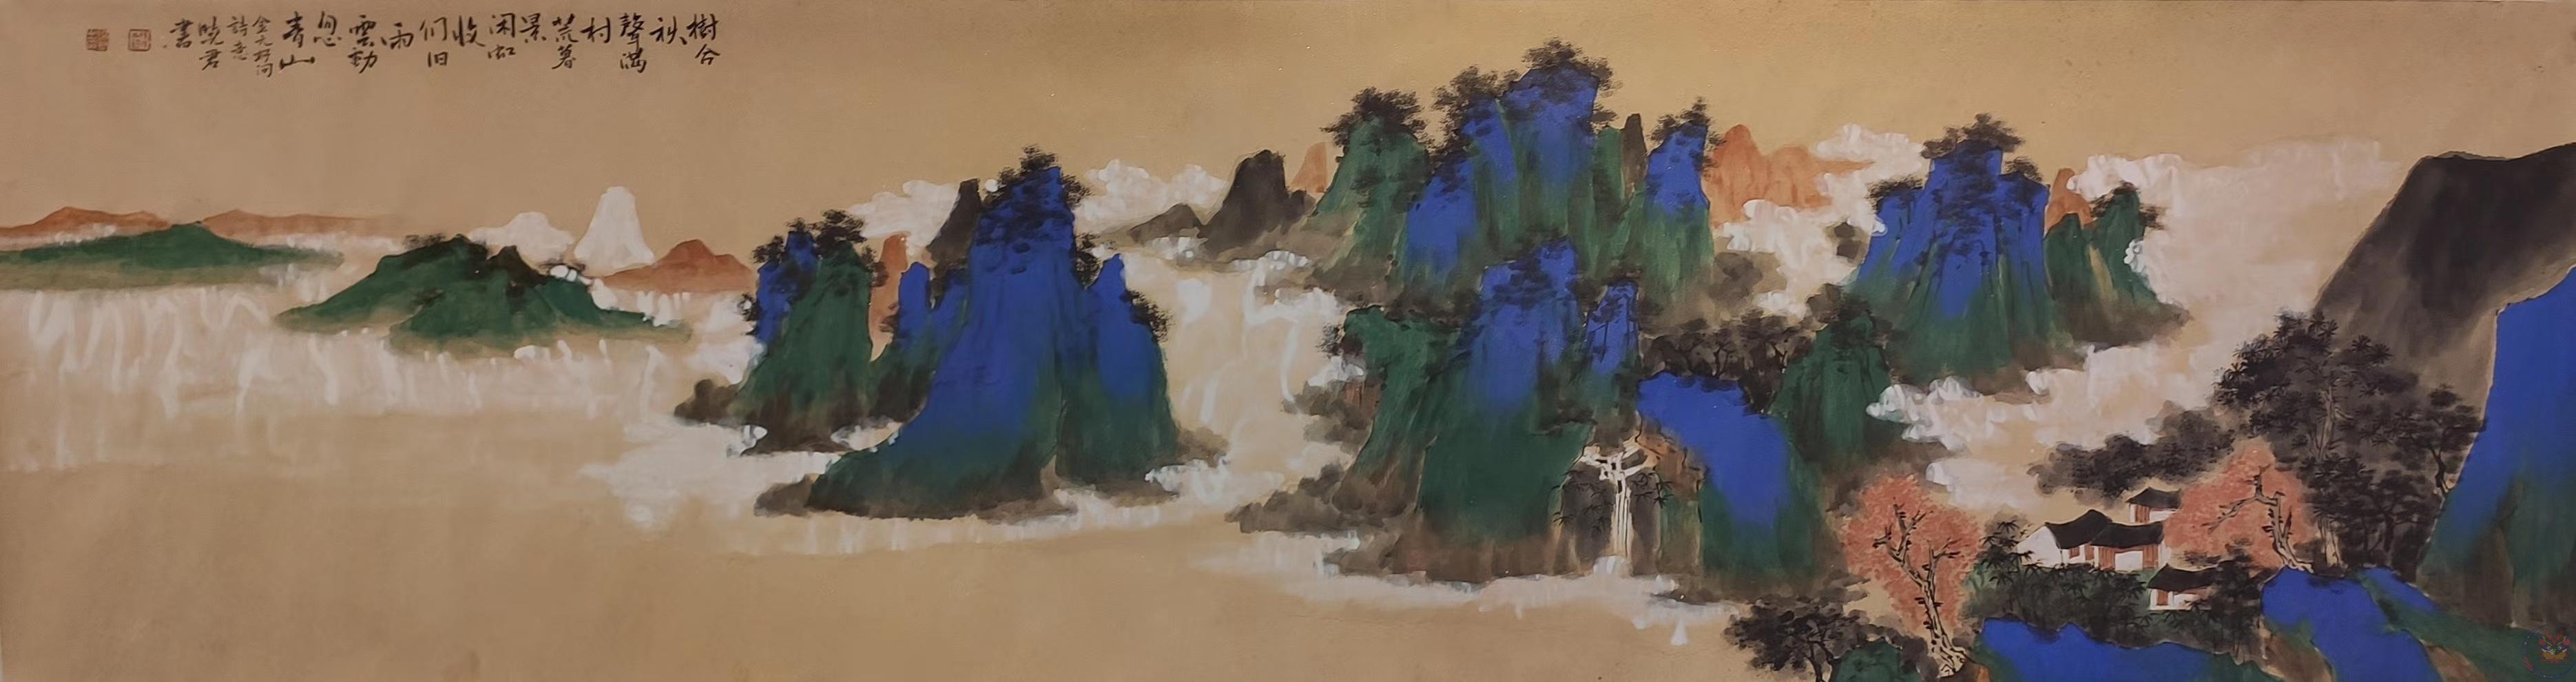 孙晓君：中国美术家协会会员、中国山水间协会会员、绘画颜料采用敦煌矿物质颜料石青石绿云母、和敦煌笔画一样千年不褪色、称之为“行走的壁画”